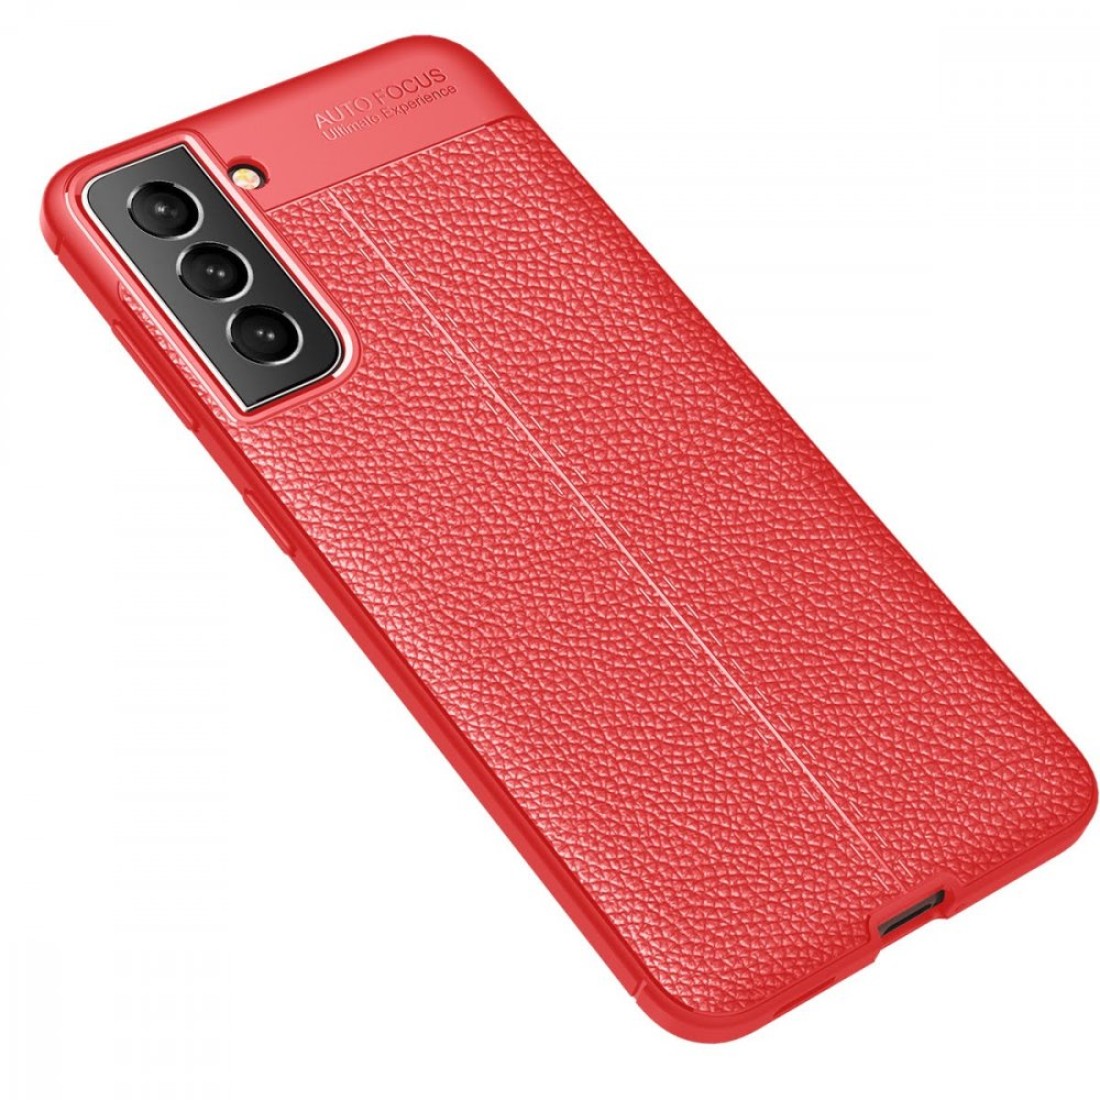 Samsung Galaxy S21 FE Kılıf Focus Derili Silikon - Kırmızı